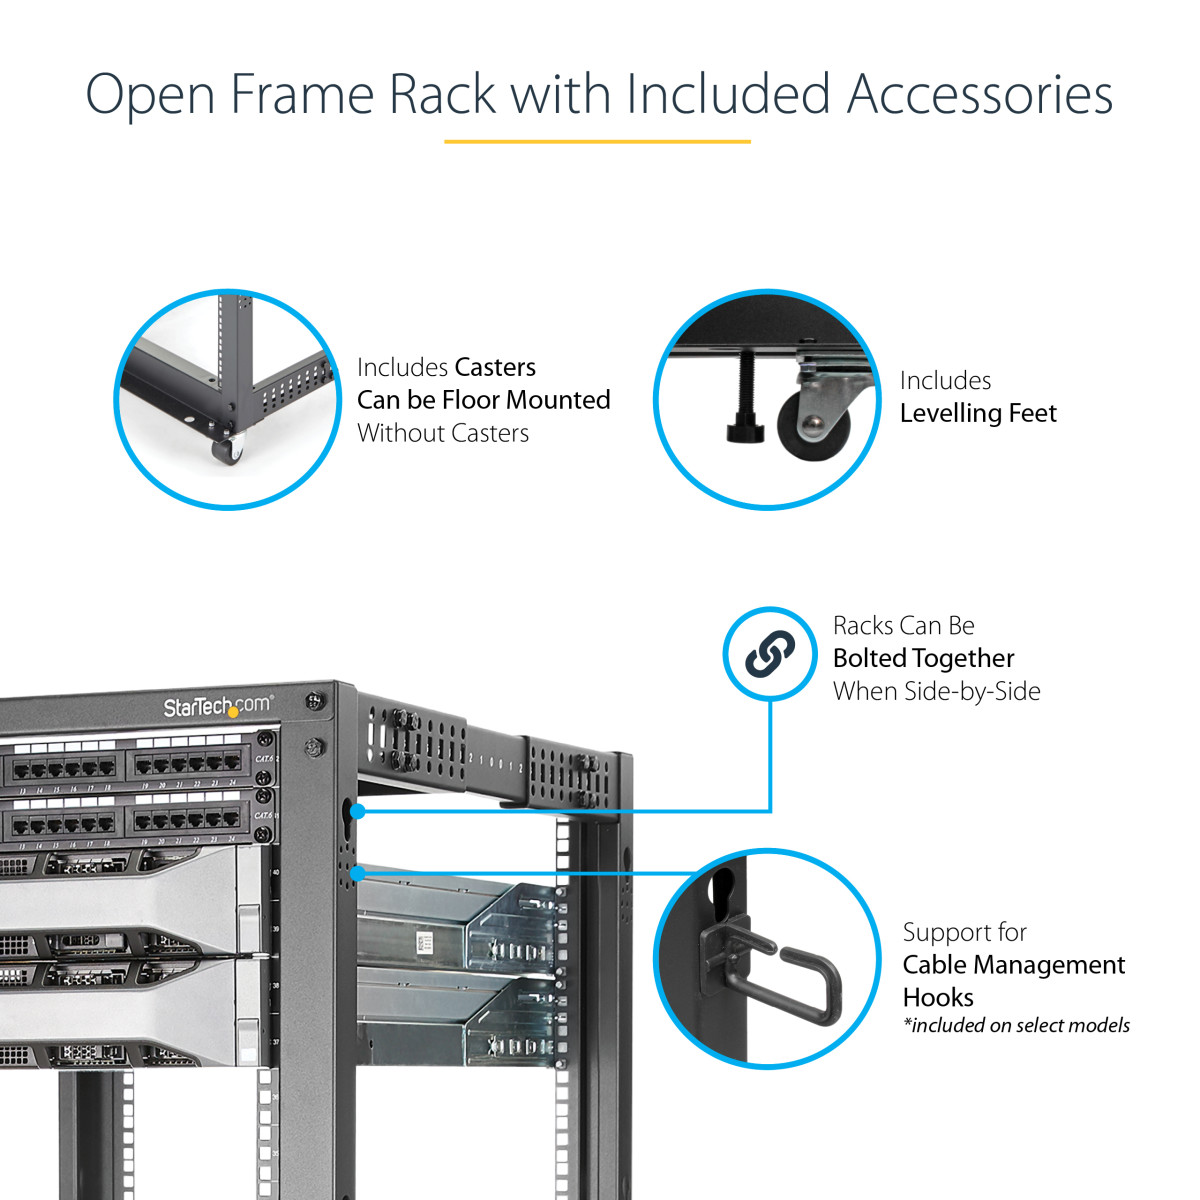 12U Adjustable Open Frame 4 Post Rack